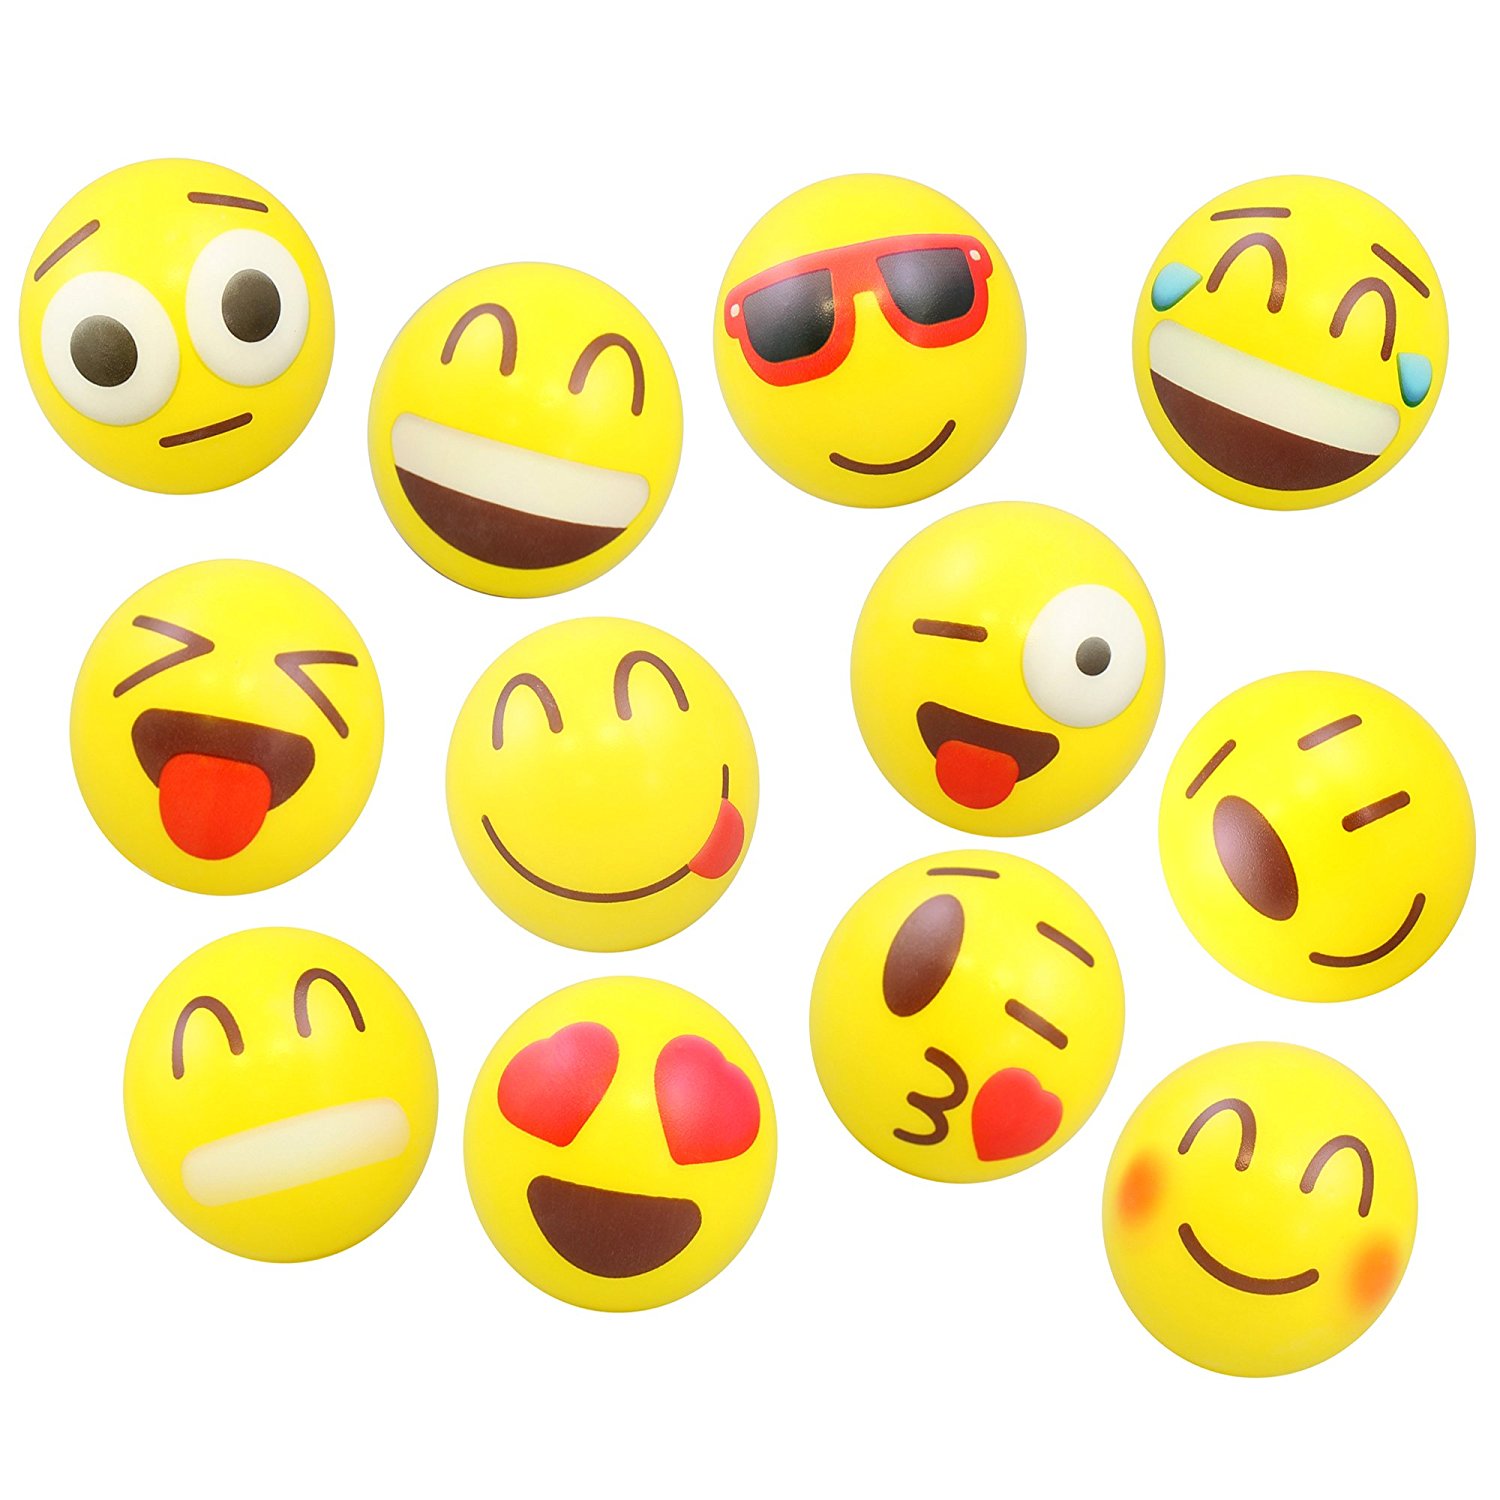 Amazon.com: 24 Colorful Emoji Stress Balls - Squishy, Squeezable ...